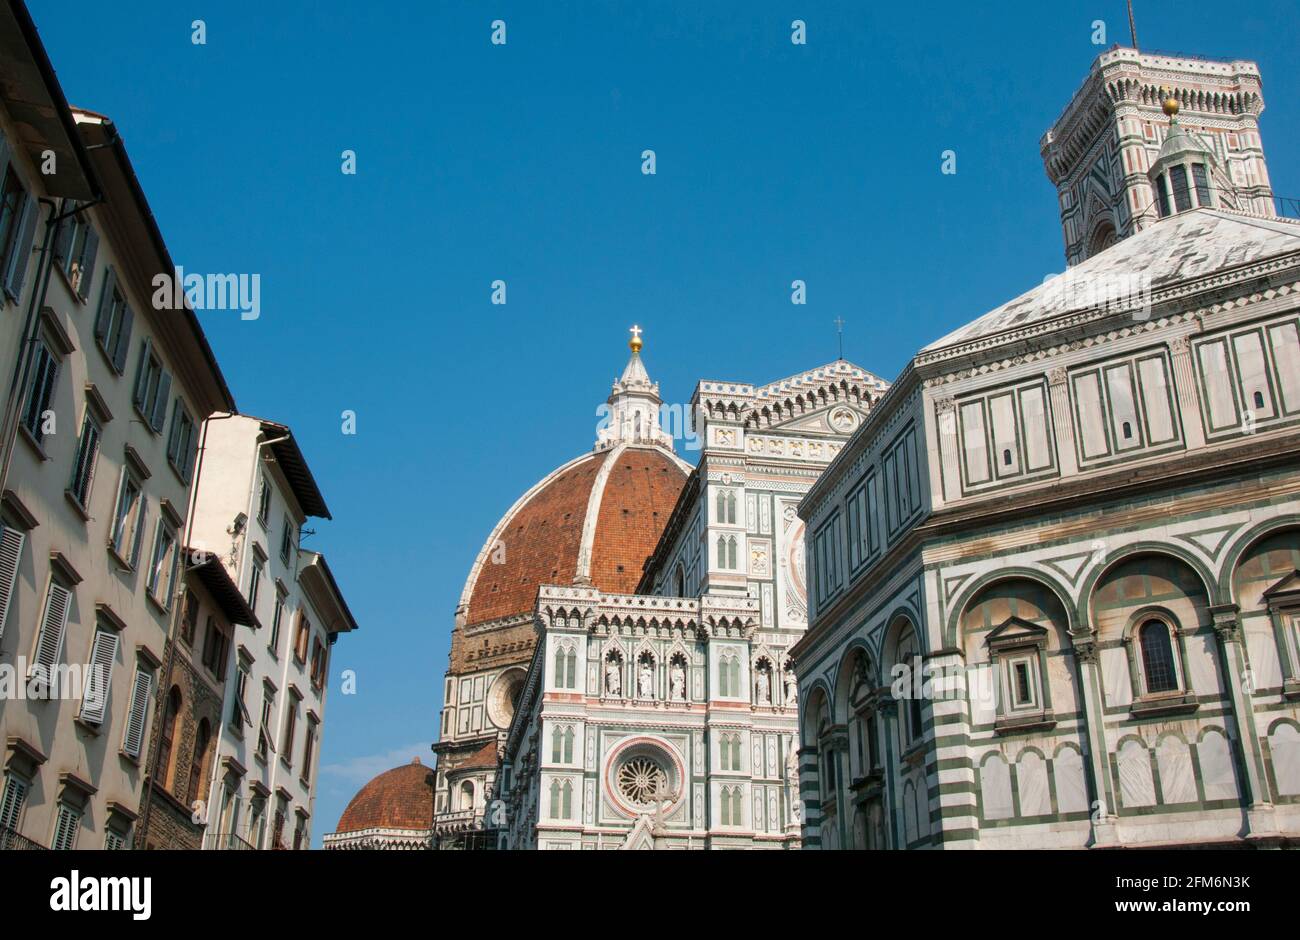 Das typisch italienische gotische Gebäude, die Kathedrale von Florenz, ist der 'Santa Maria del Fiore' gewidmet. Die Kirche wurde von Arnolfo di Cambio entworfen Stockfoto